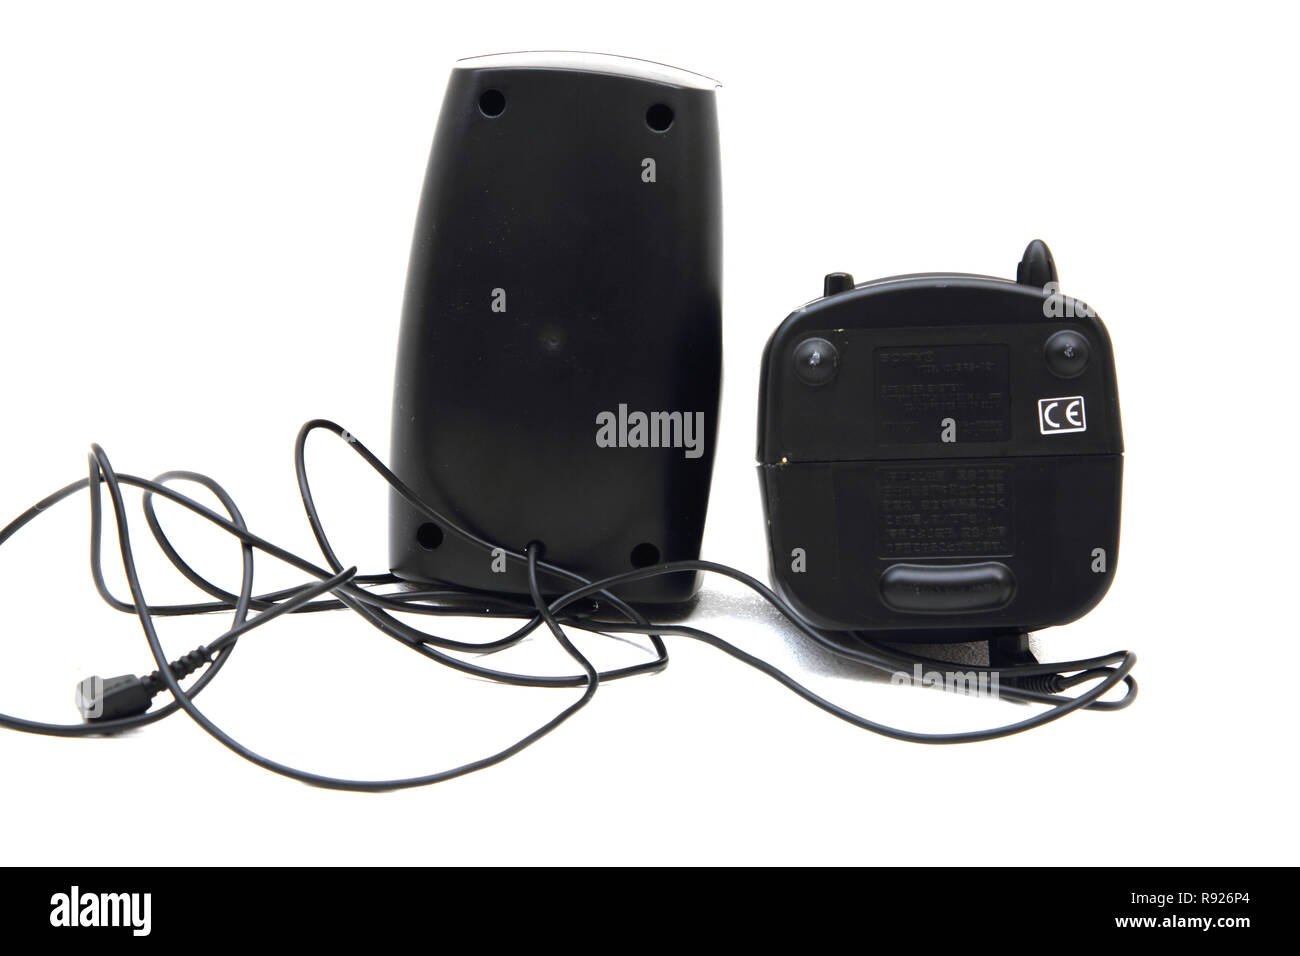 sony dj speaker system